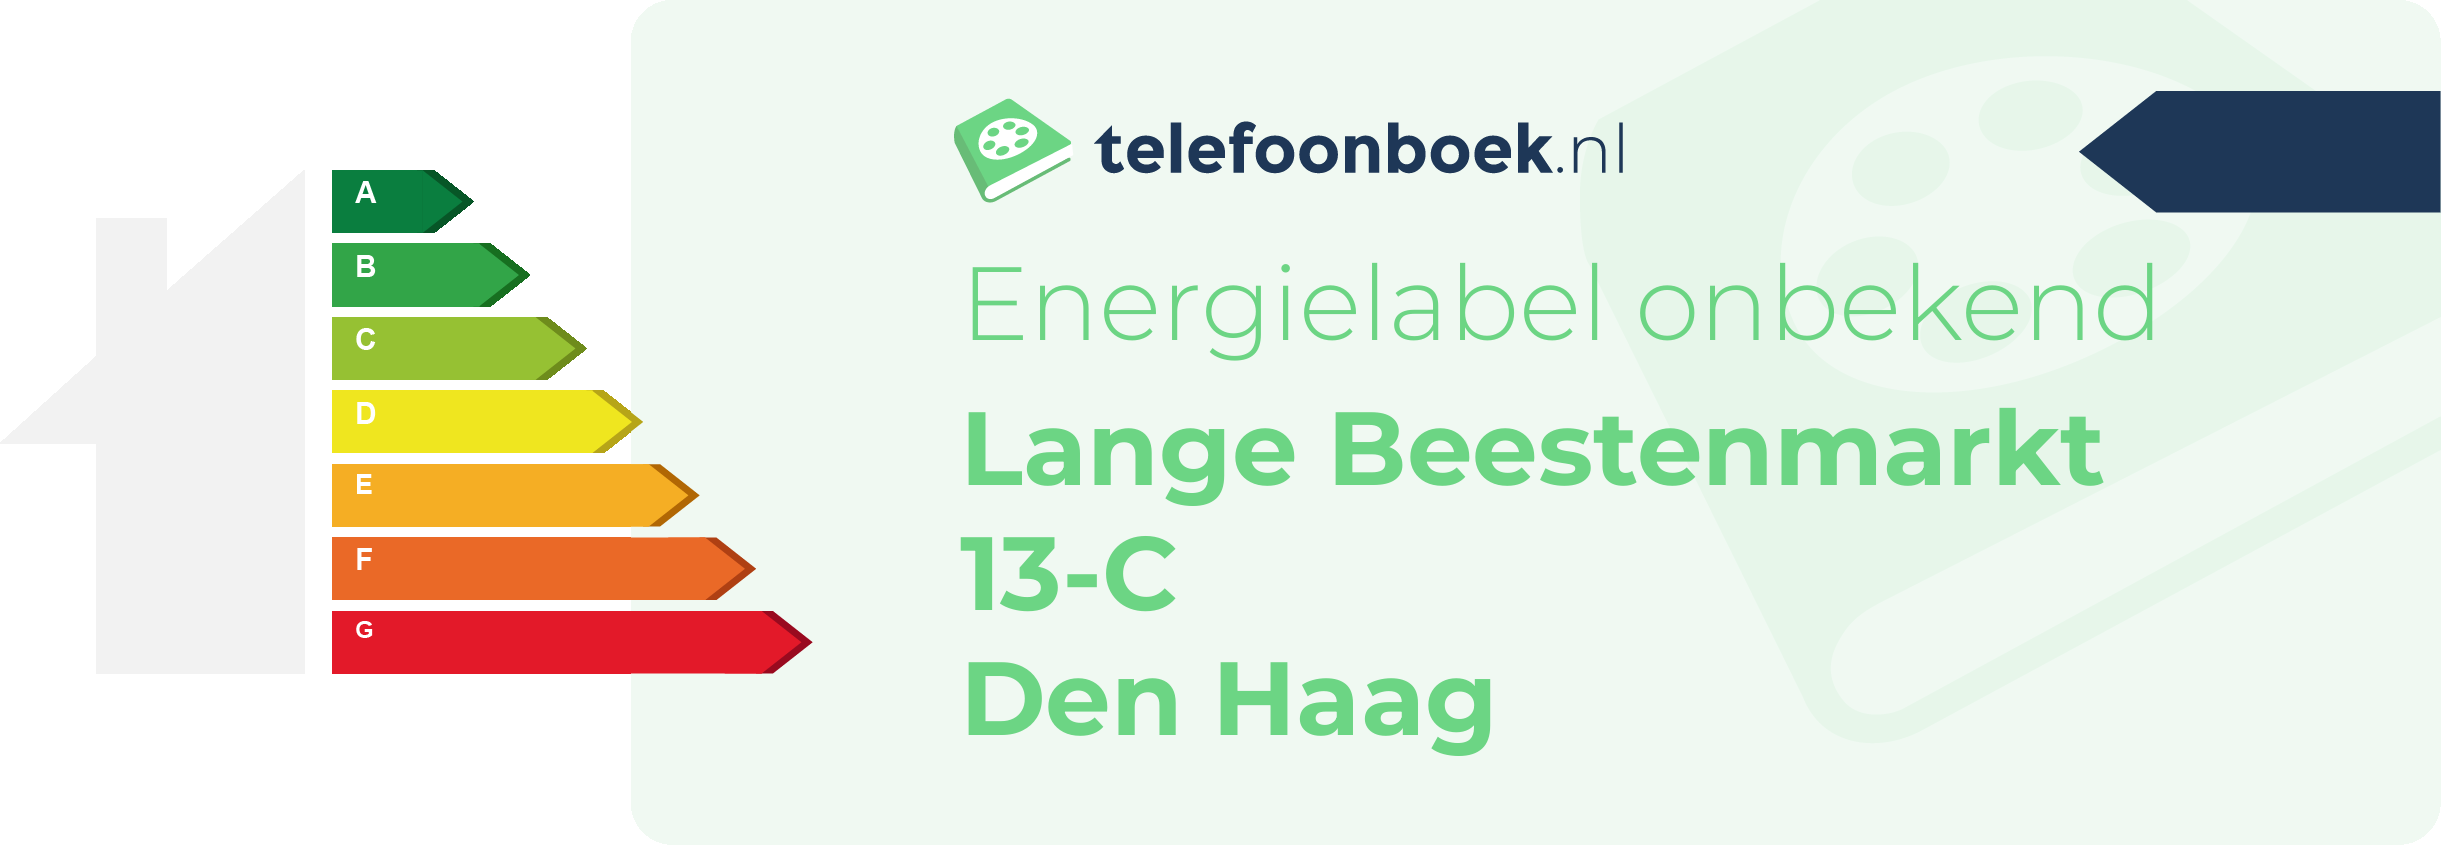 Energielabel Lange Beestenmarkt 13-C Den Haag